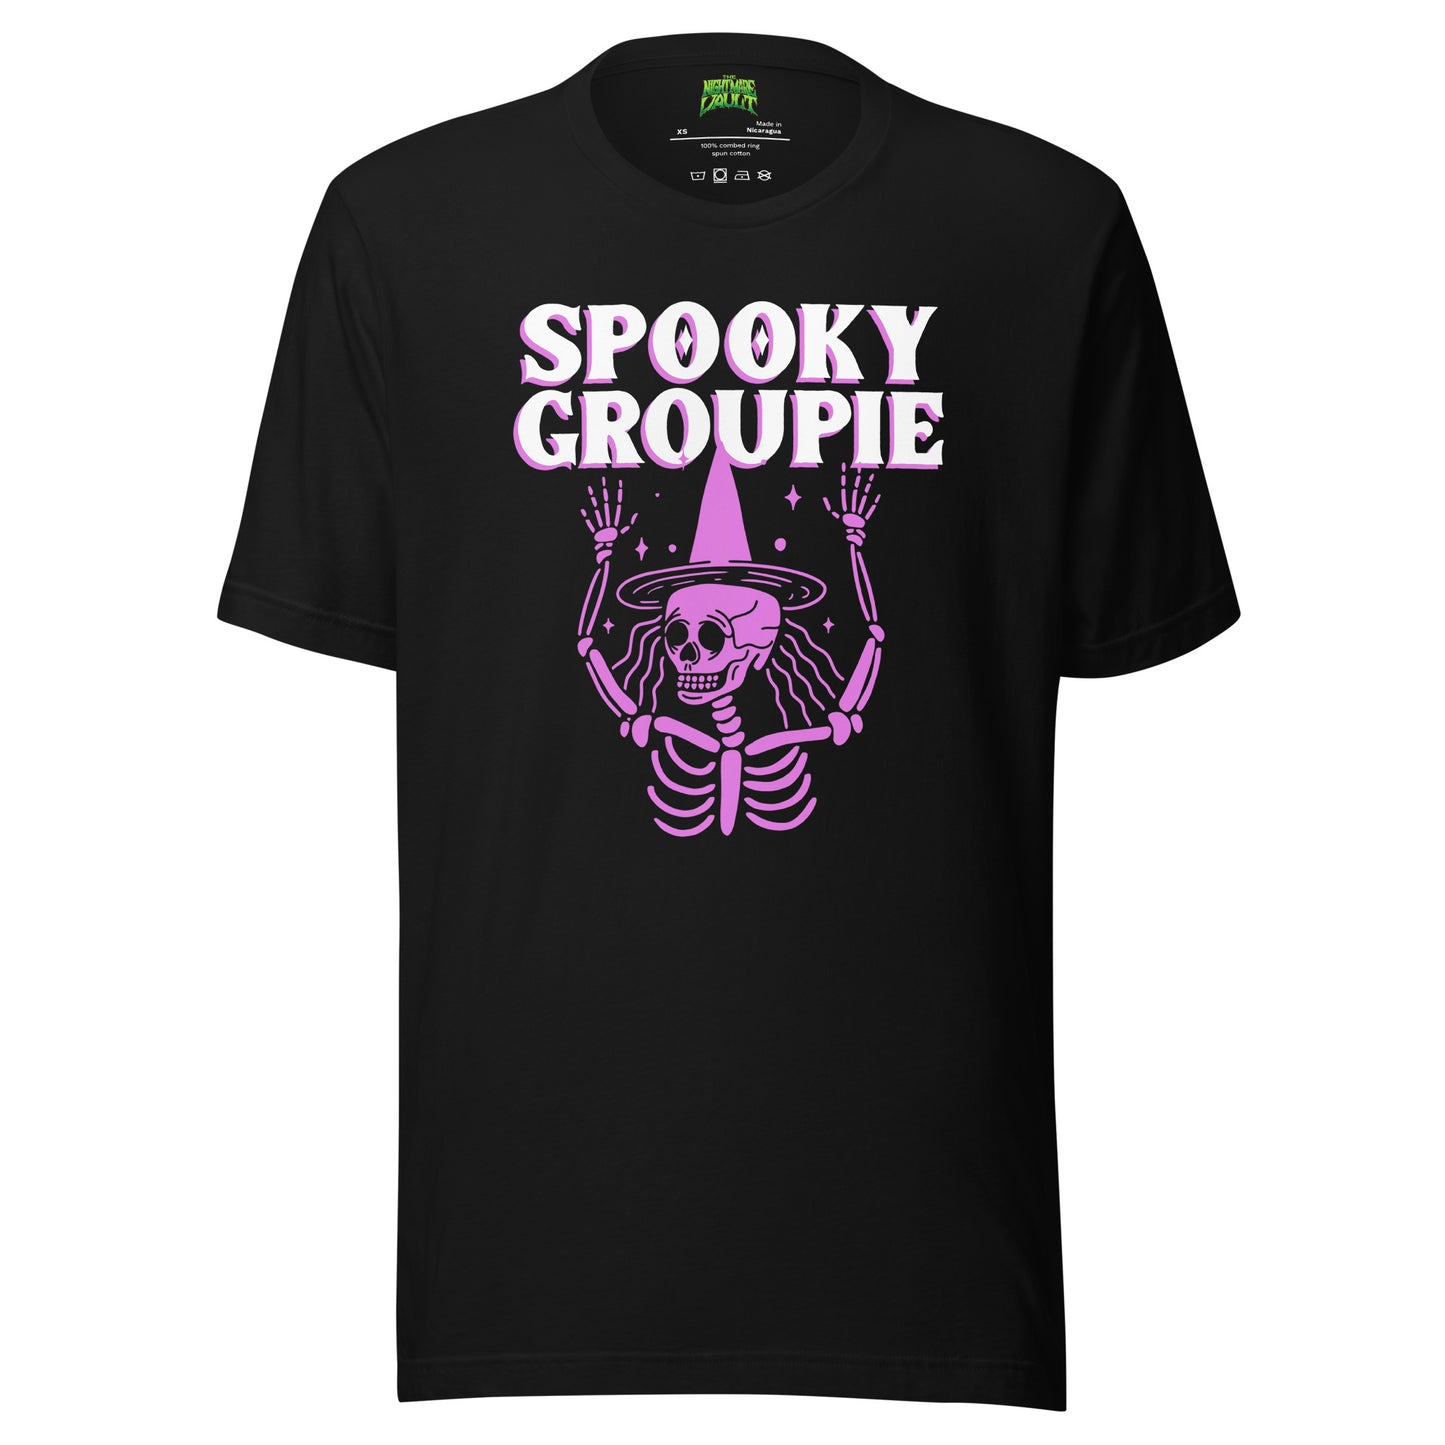 Spooky Groupie tee